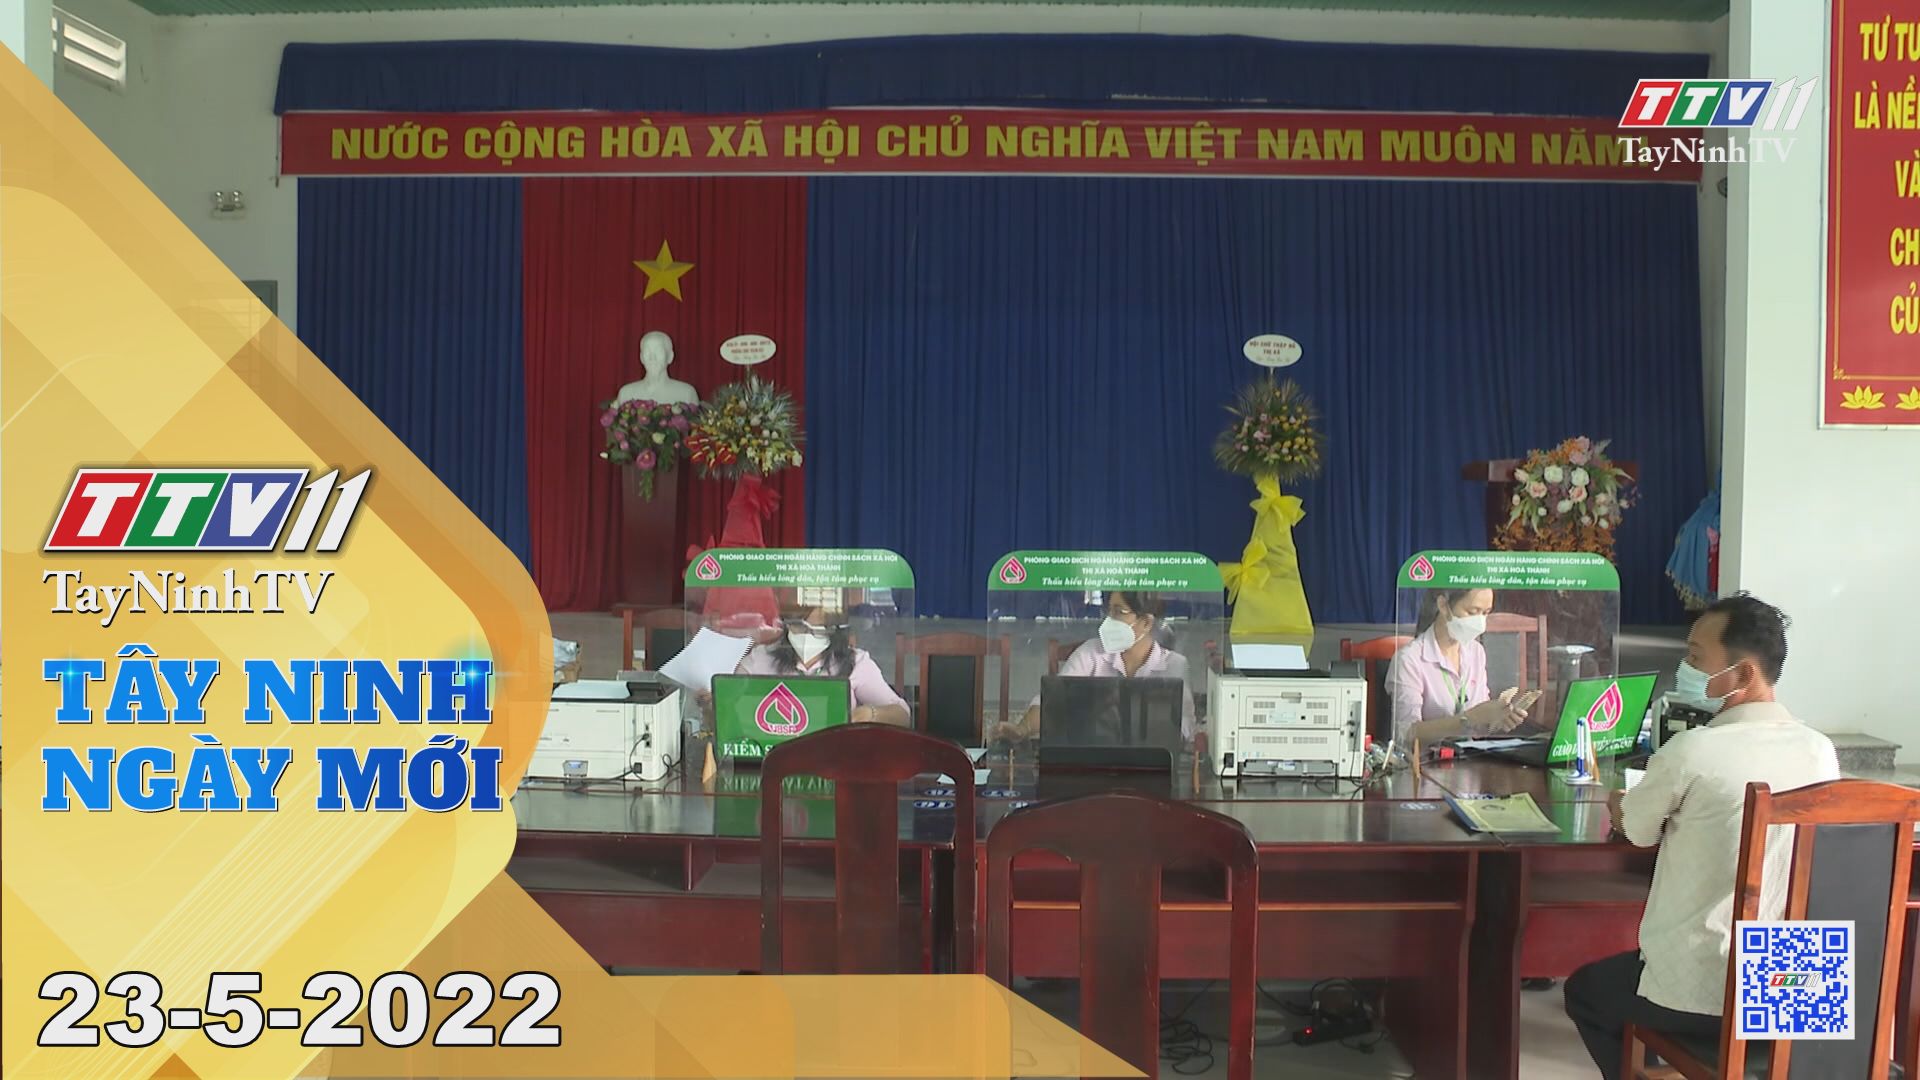 Tây Ninh ngày mới 23-5-2022 | Tin tức hôm nay | TayNinhTV